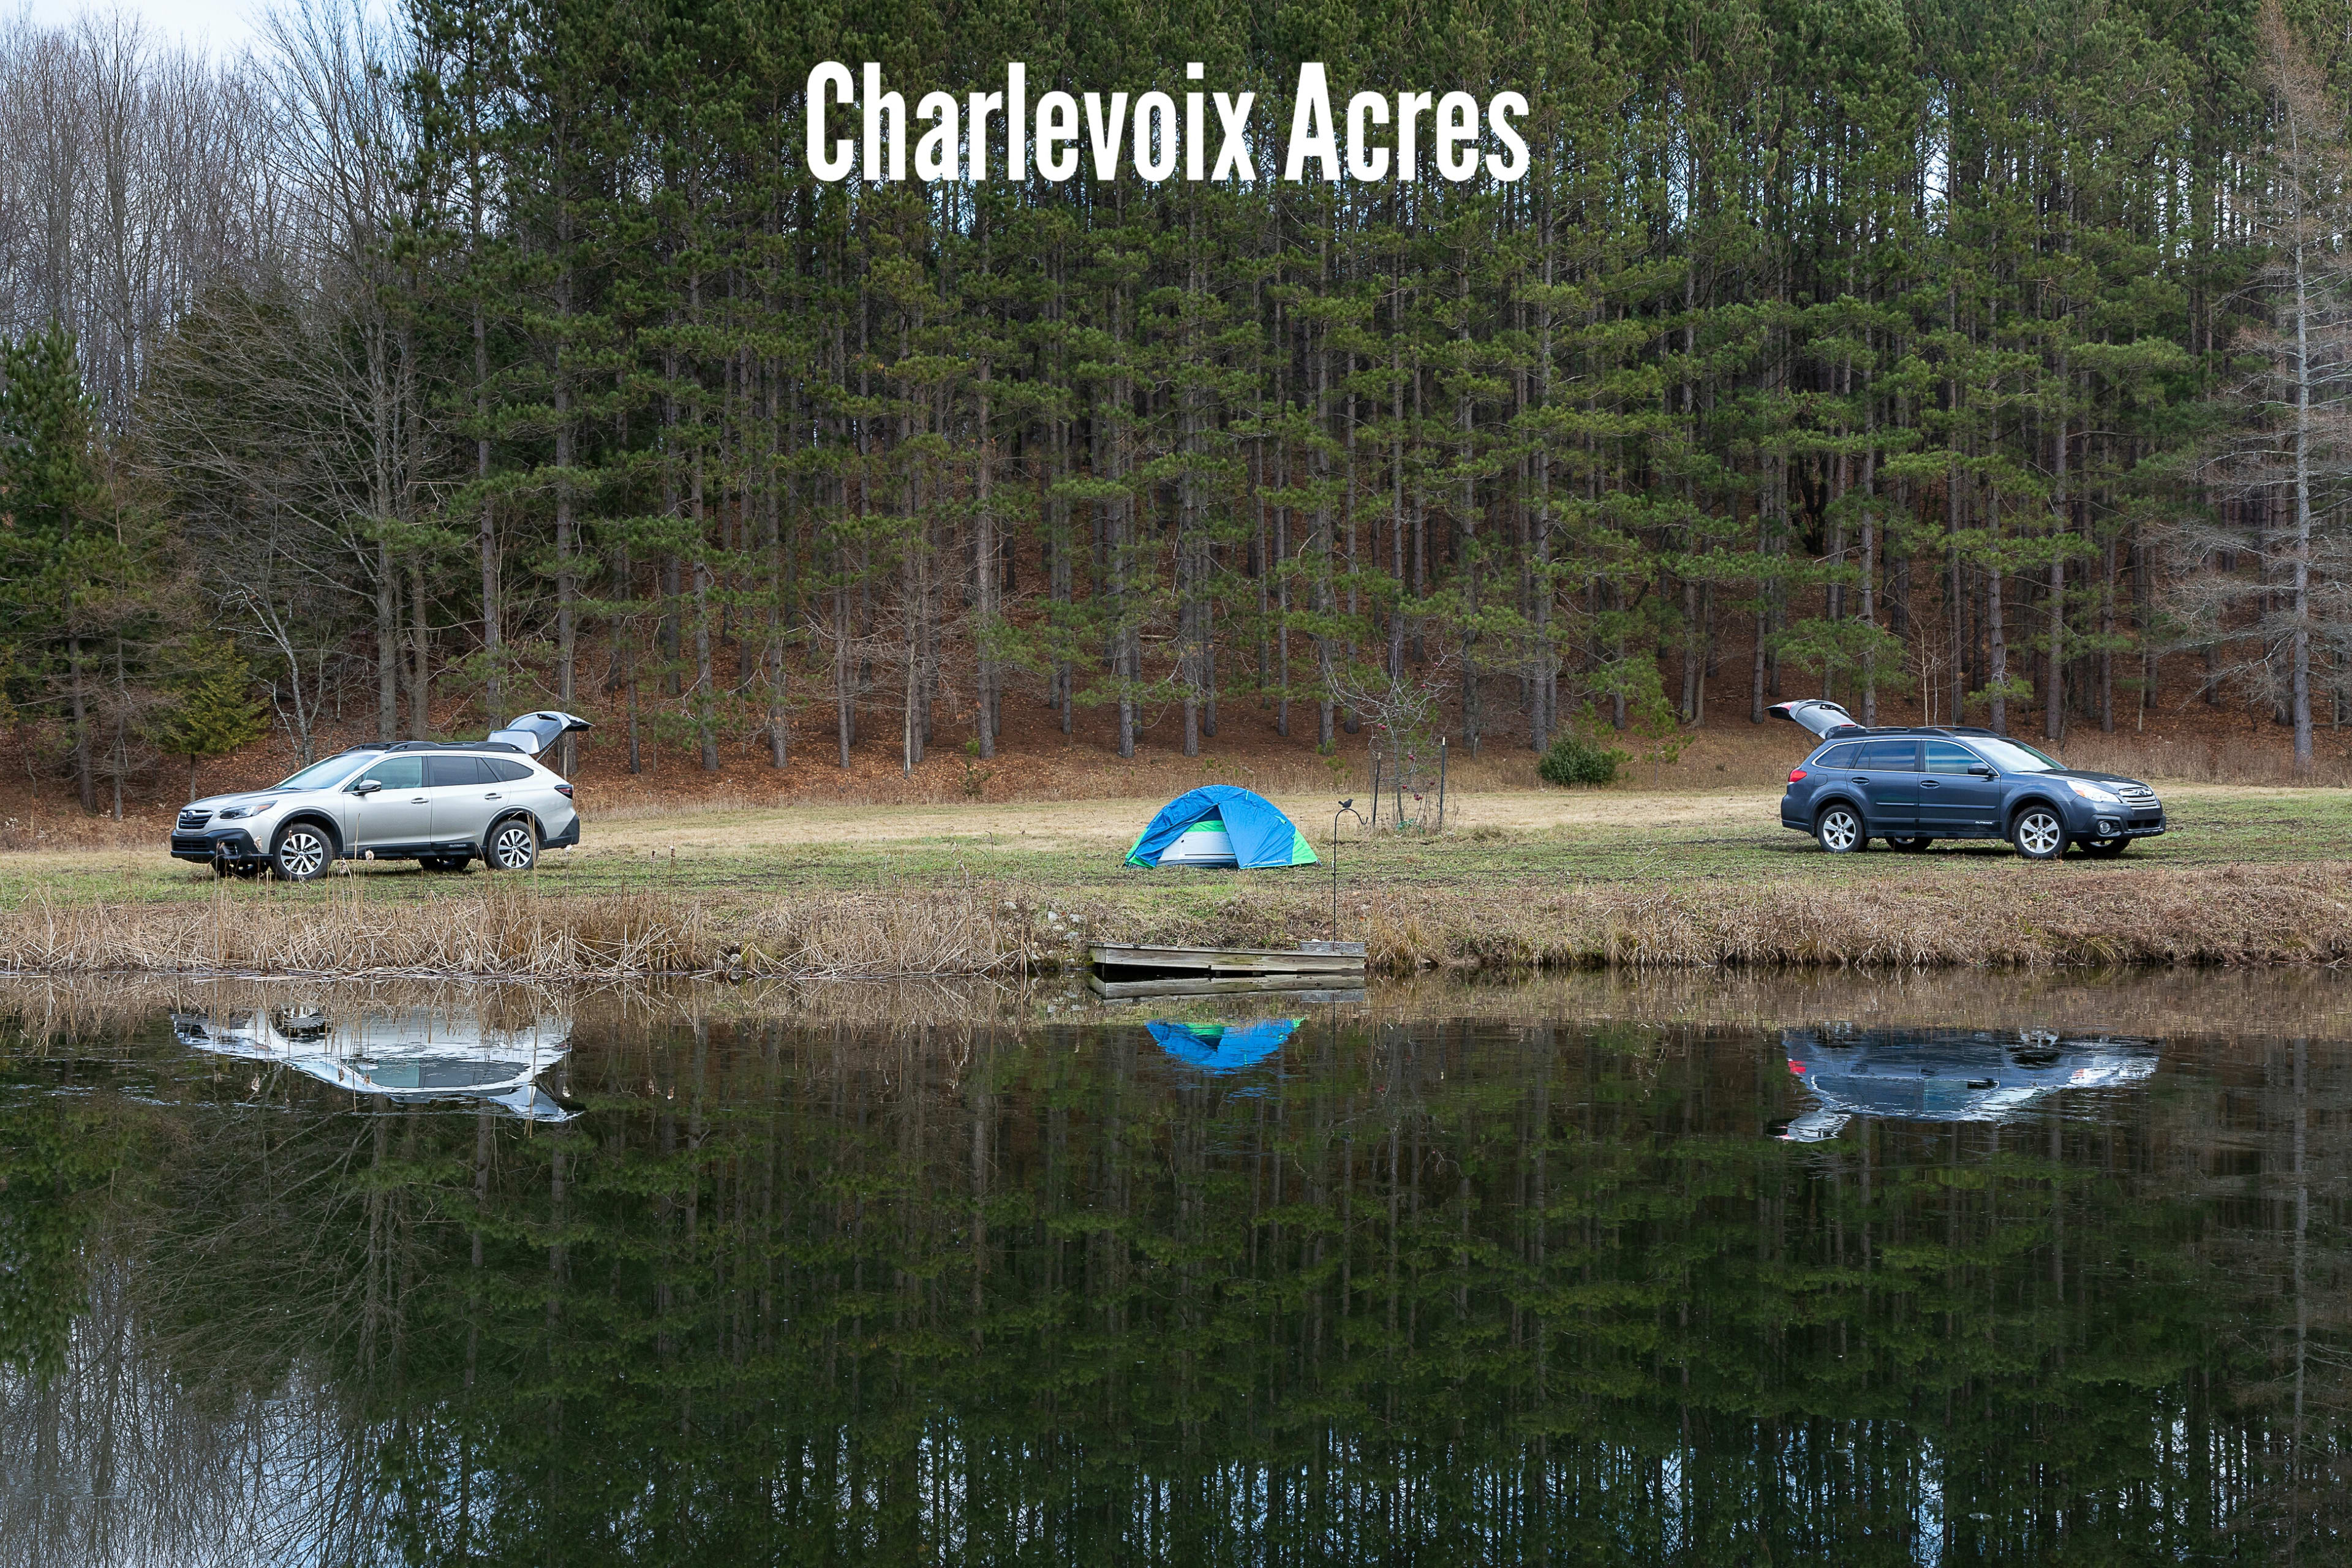 Charlevoix Acres